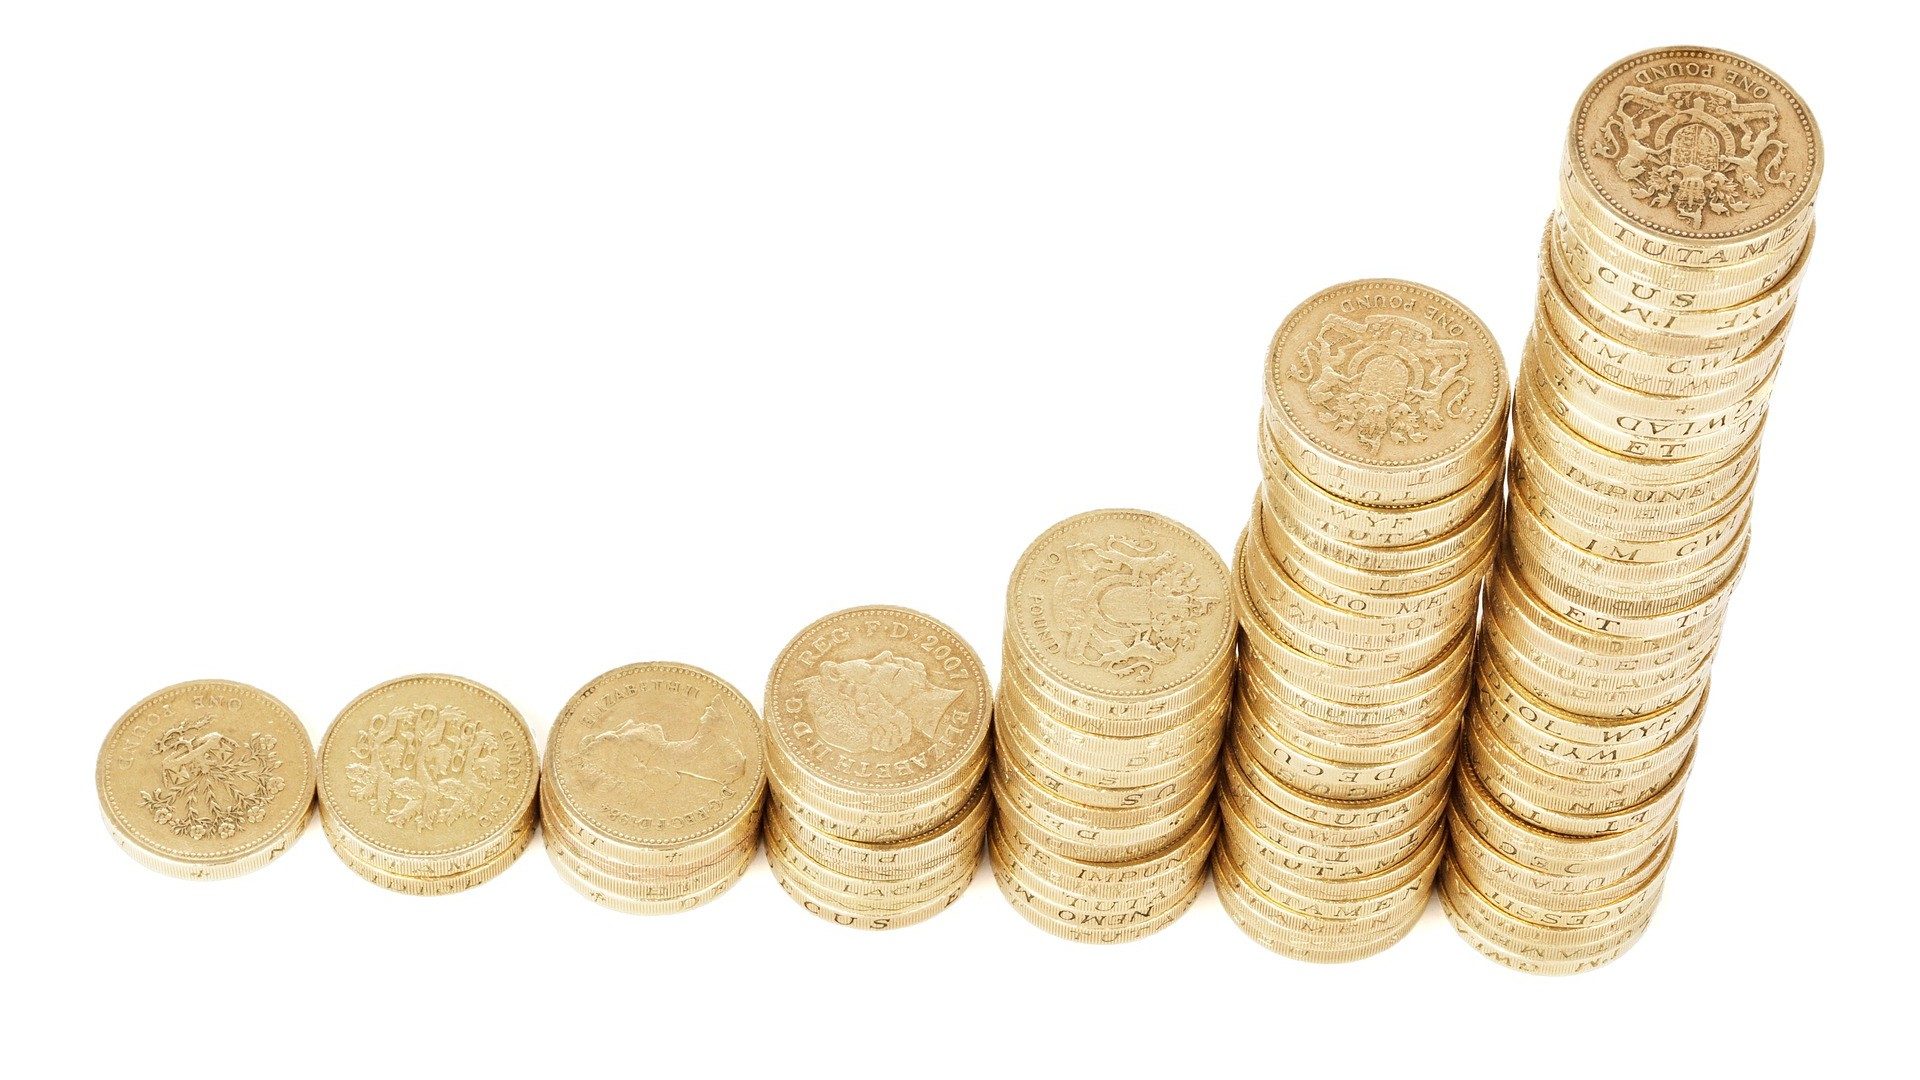 Mehrere Stapel von Geldmünzen, die exponentiell wachsen, stehen für Sparen und Investieren